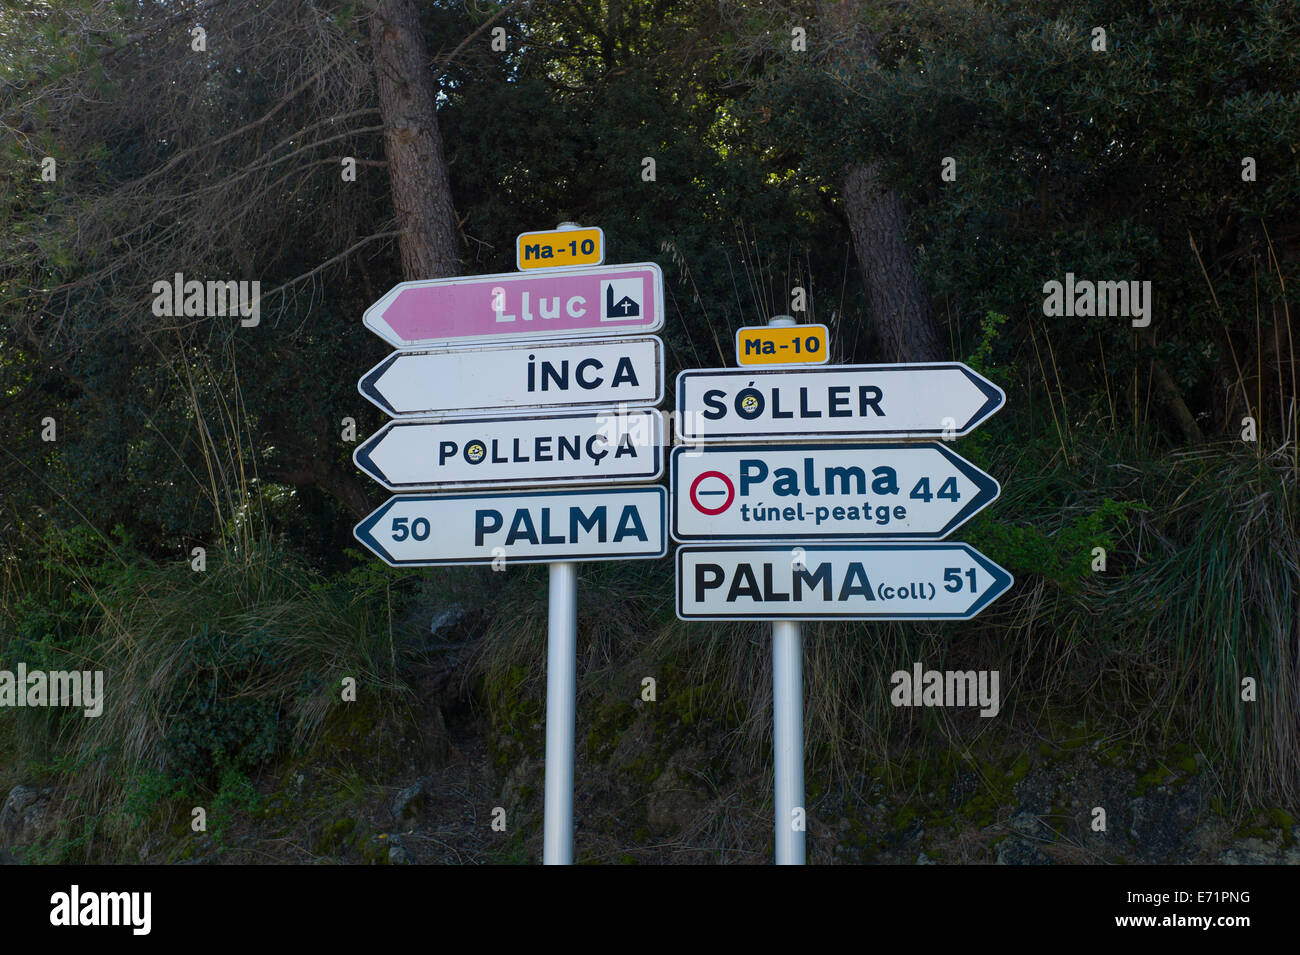 signposts at Sa Calobra, Mallorca Stock Photo